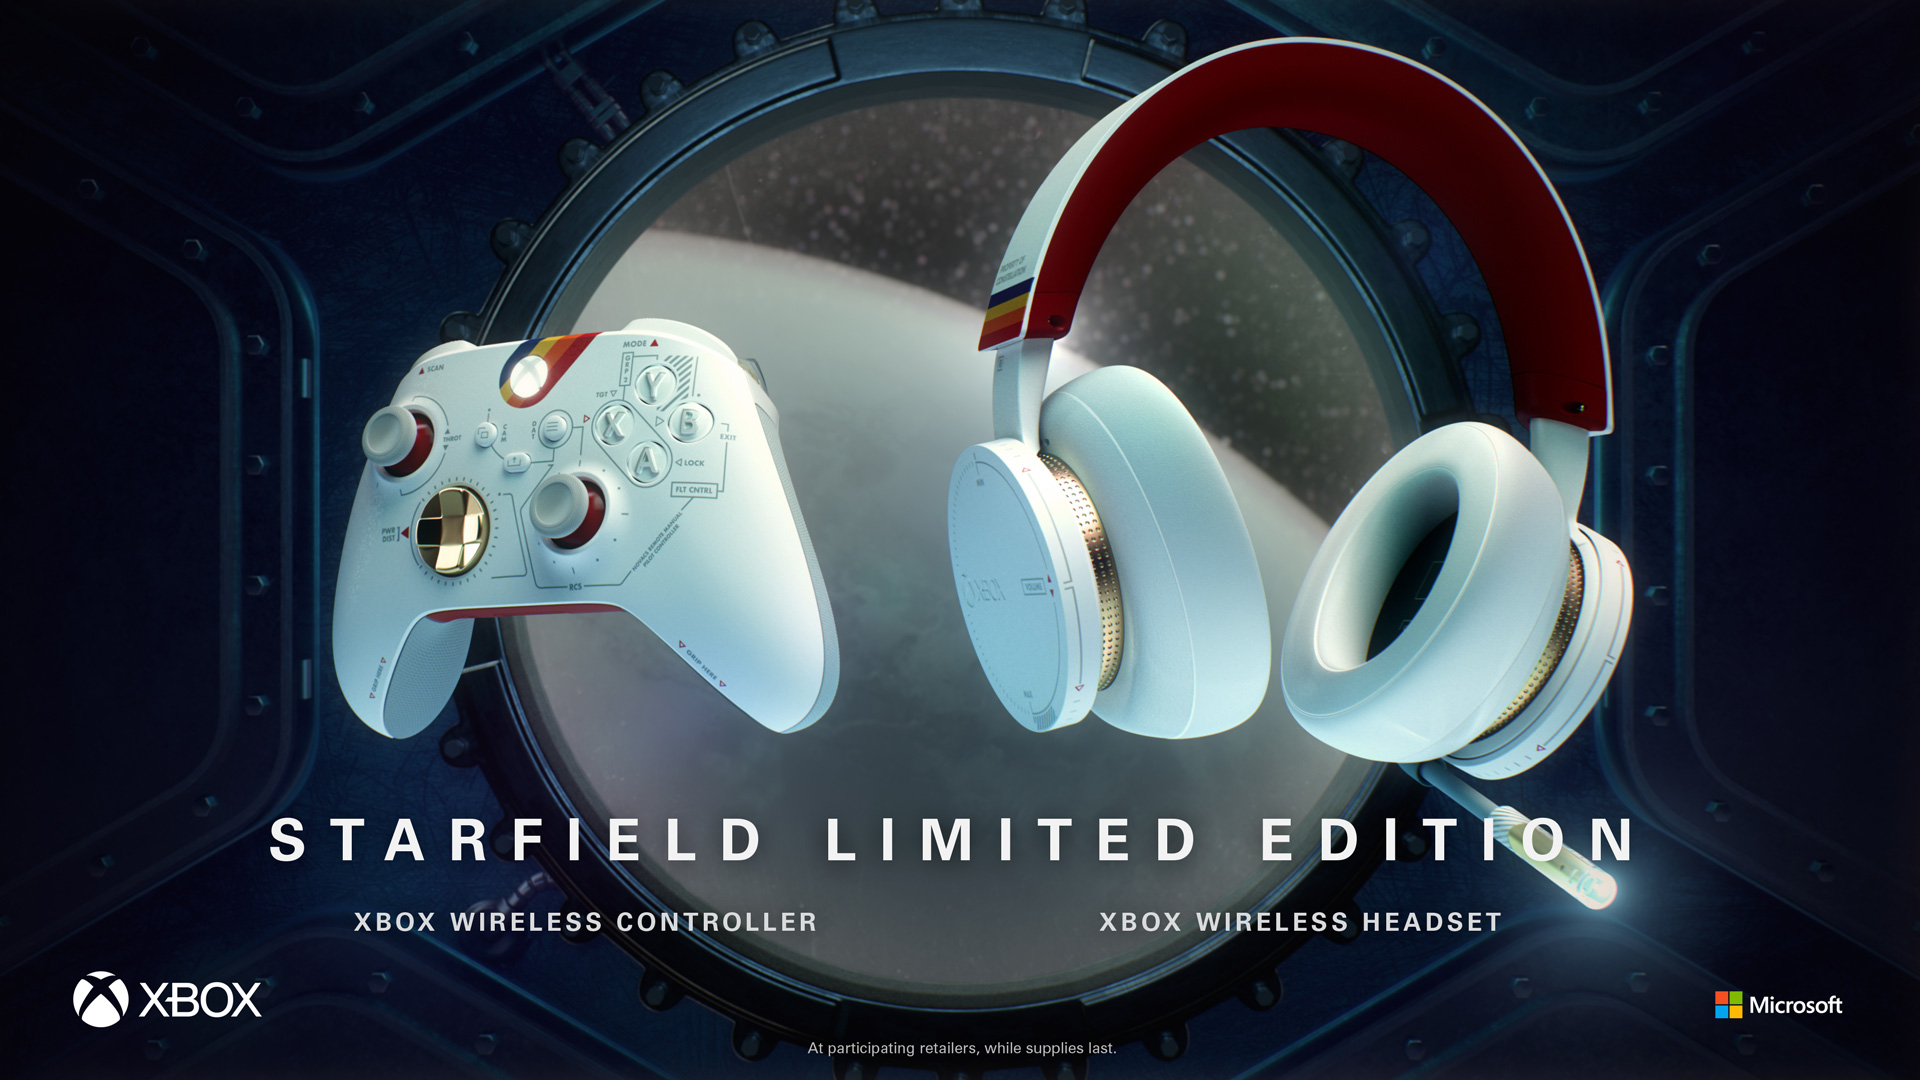 Video For Beginne Deine interstellare Reise mit dem Starfield Limited Edition Wireless Controller und Headset